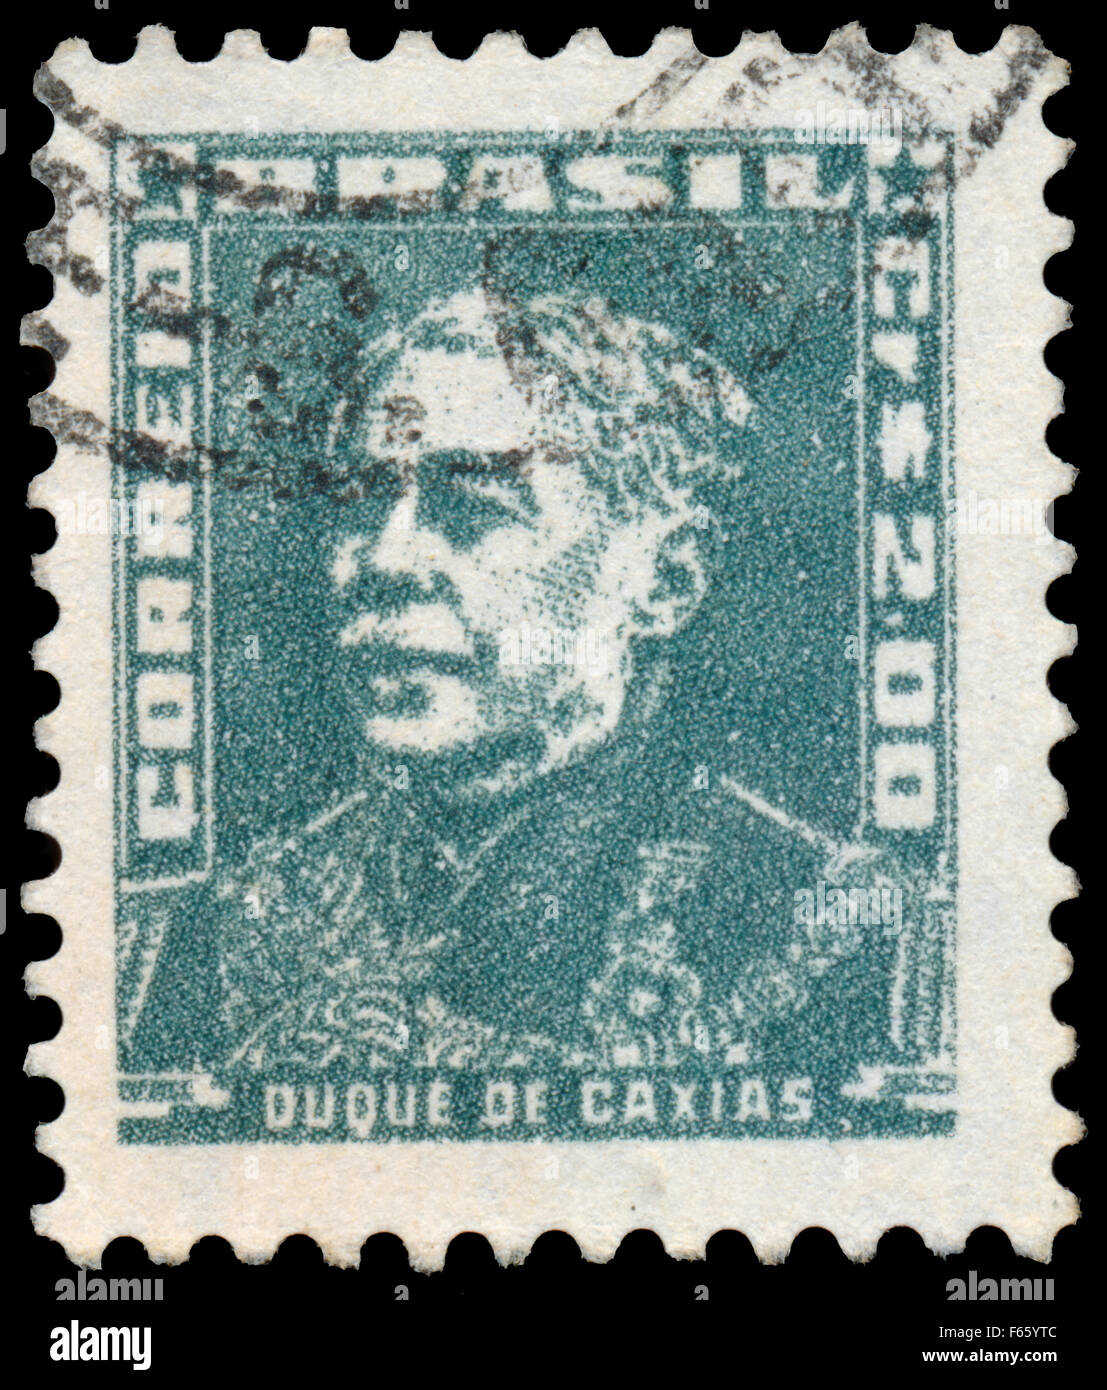 Brasile - circa 1955: timbro stampato in Brasile, mostra ritratto del Duca di Caxias, con la stessa iscrizione, circa 1955 Foto Stock